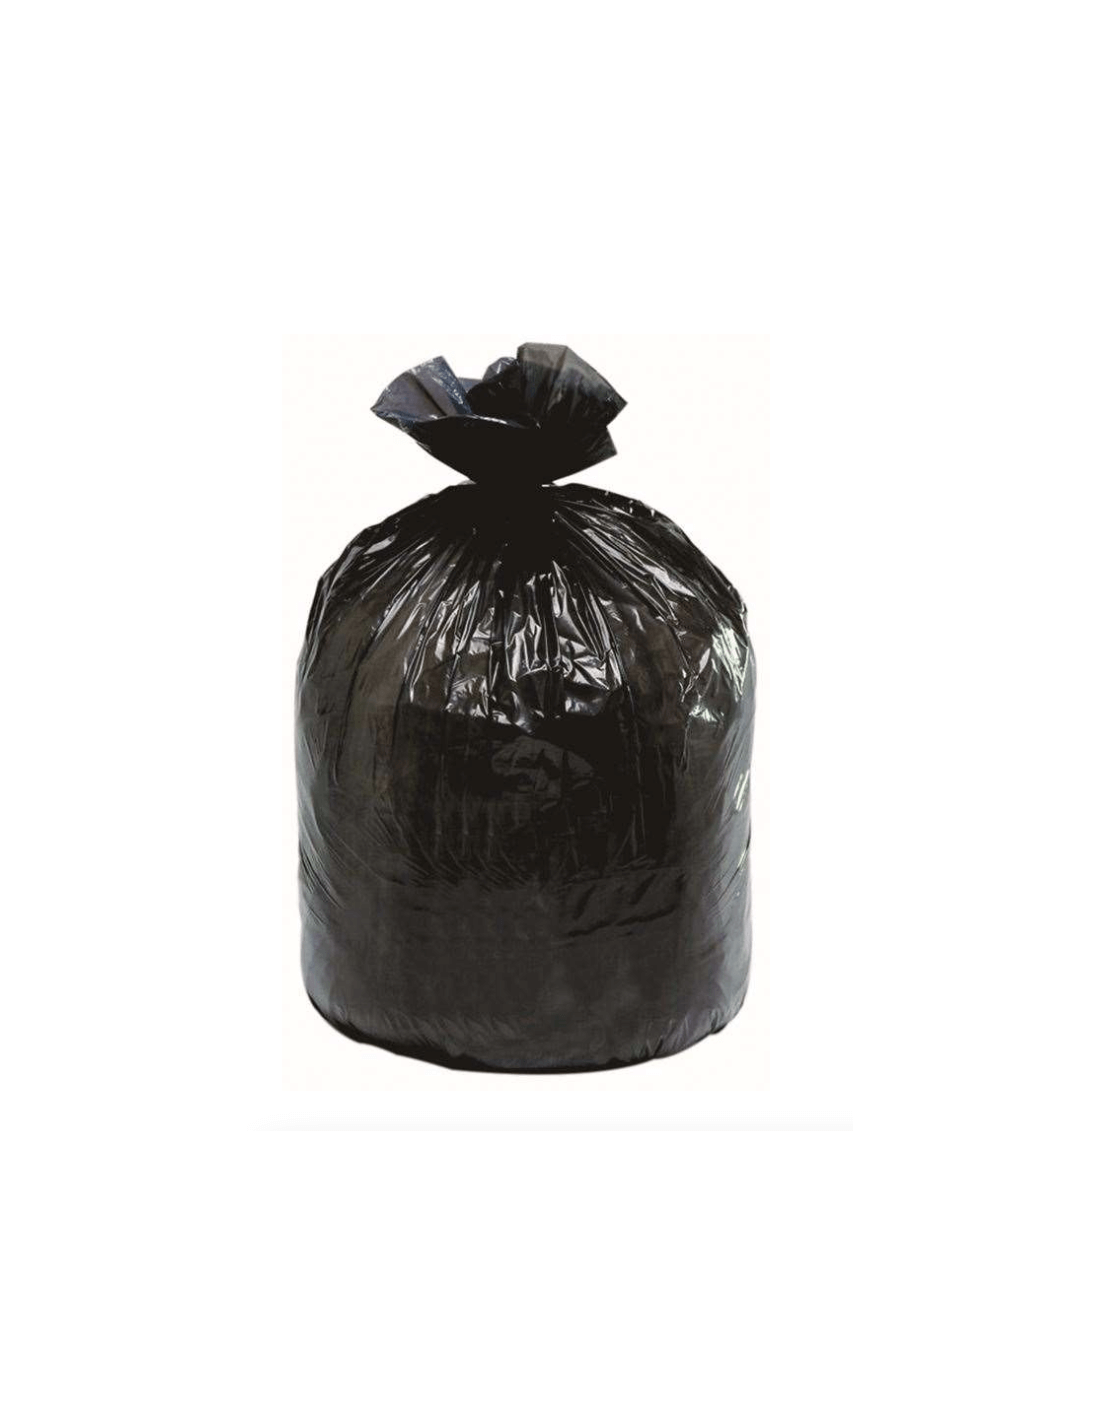 Support sac poubelle Keeeper noir-gris 60-120L